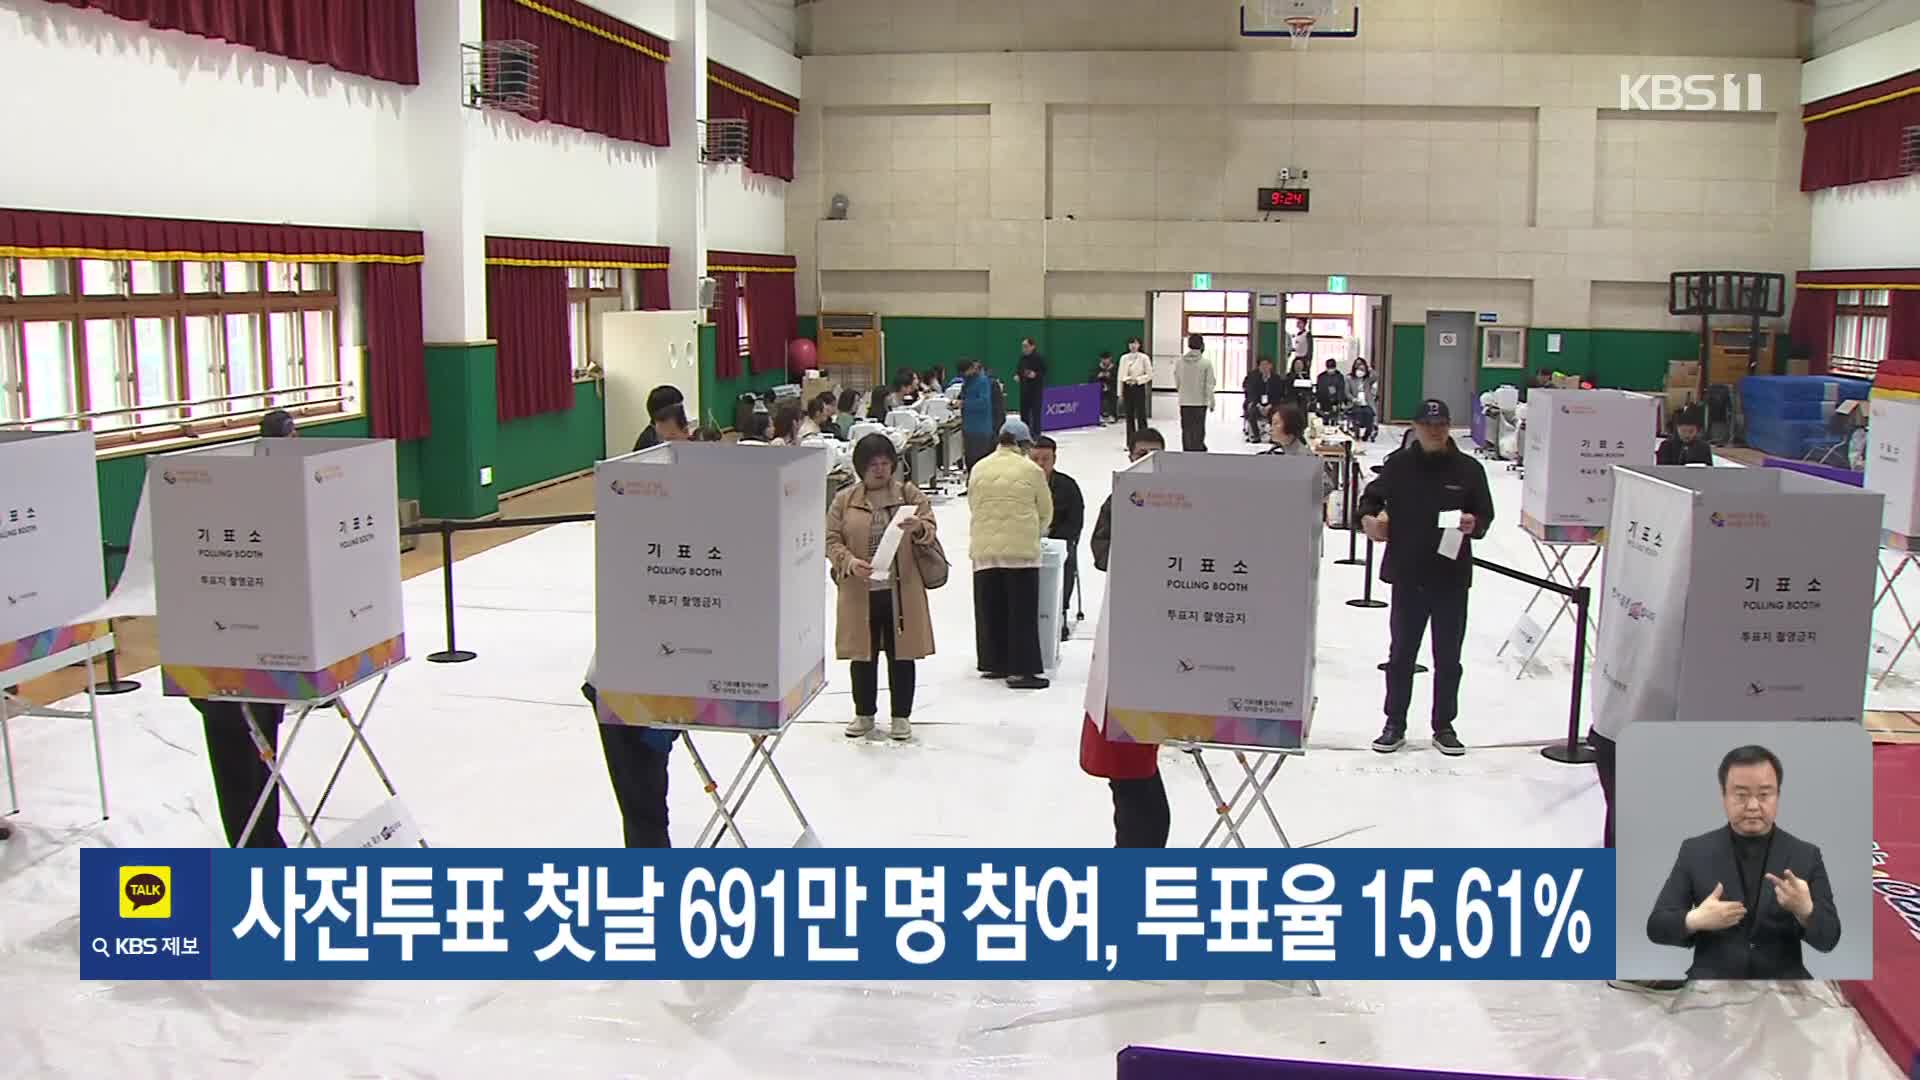 사전투표 첫날 691만 명 참여, 투표율 15.61%